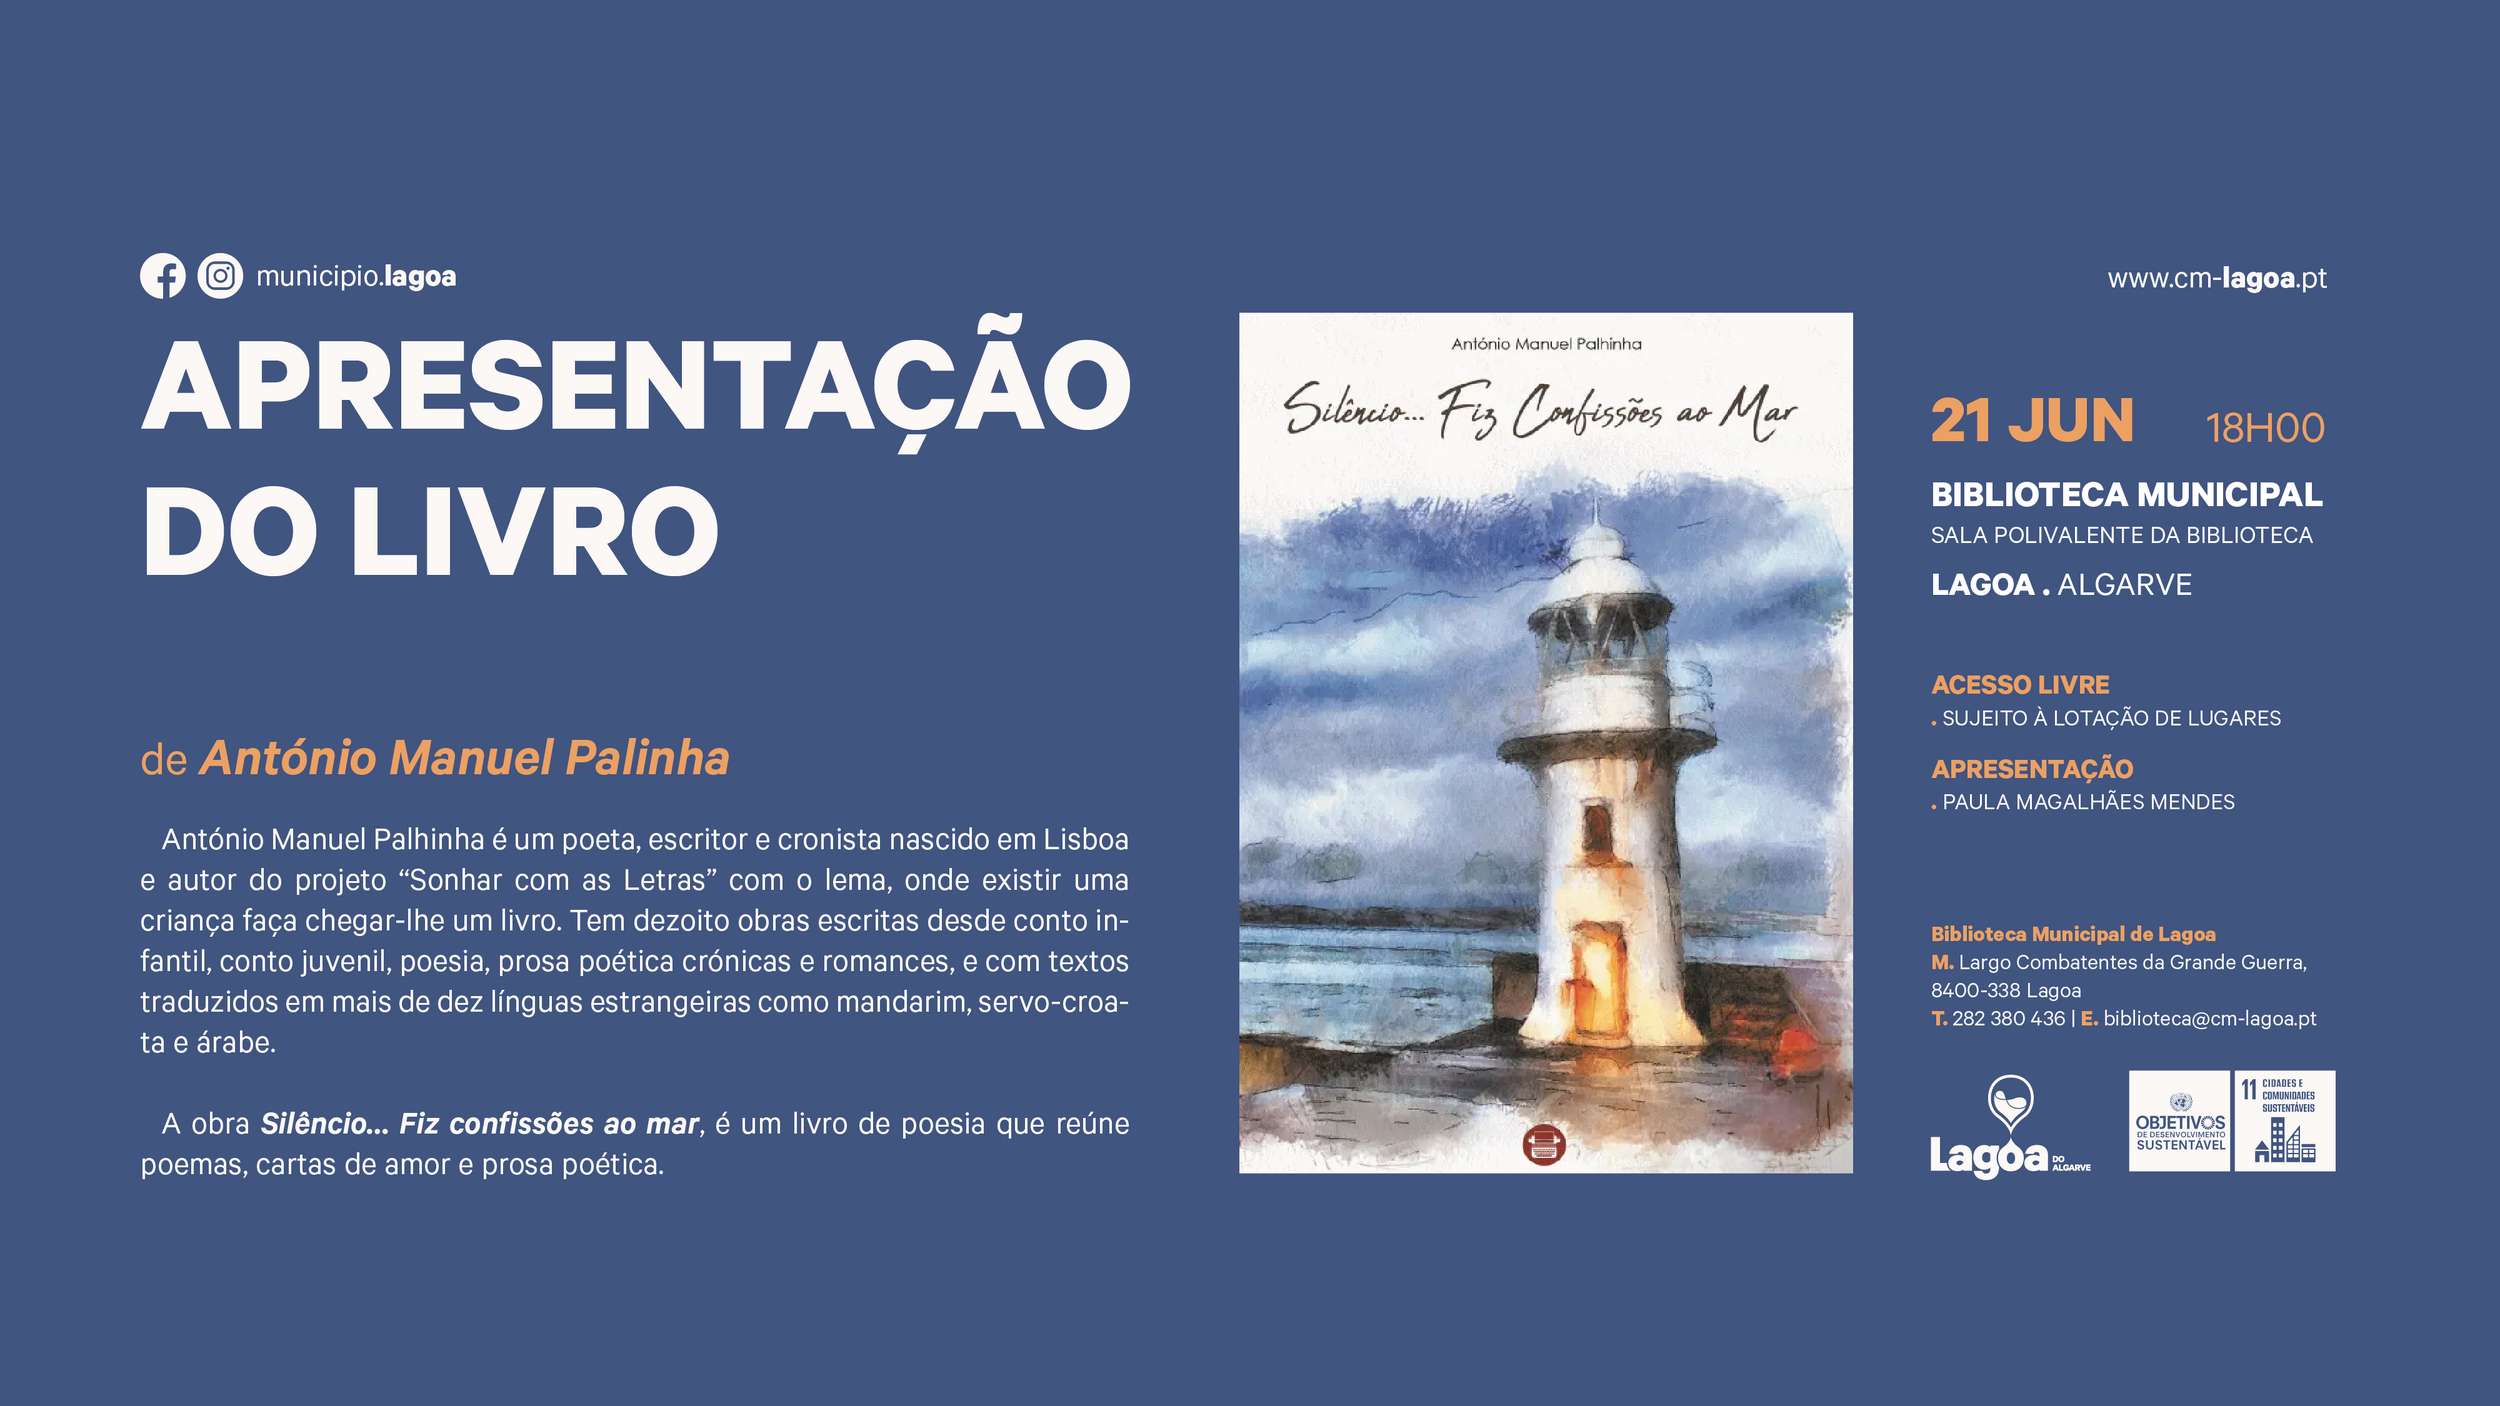 Apresentação pública do livro "Silêncio… Fiz confissões ao mar" de António Manuel Palhinha